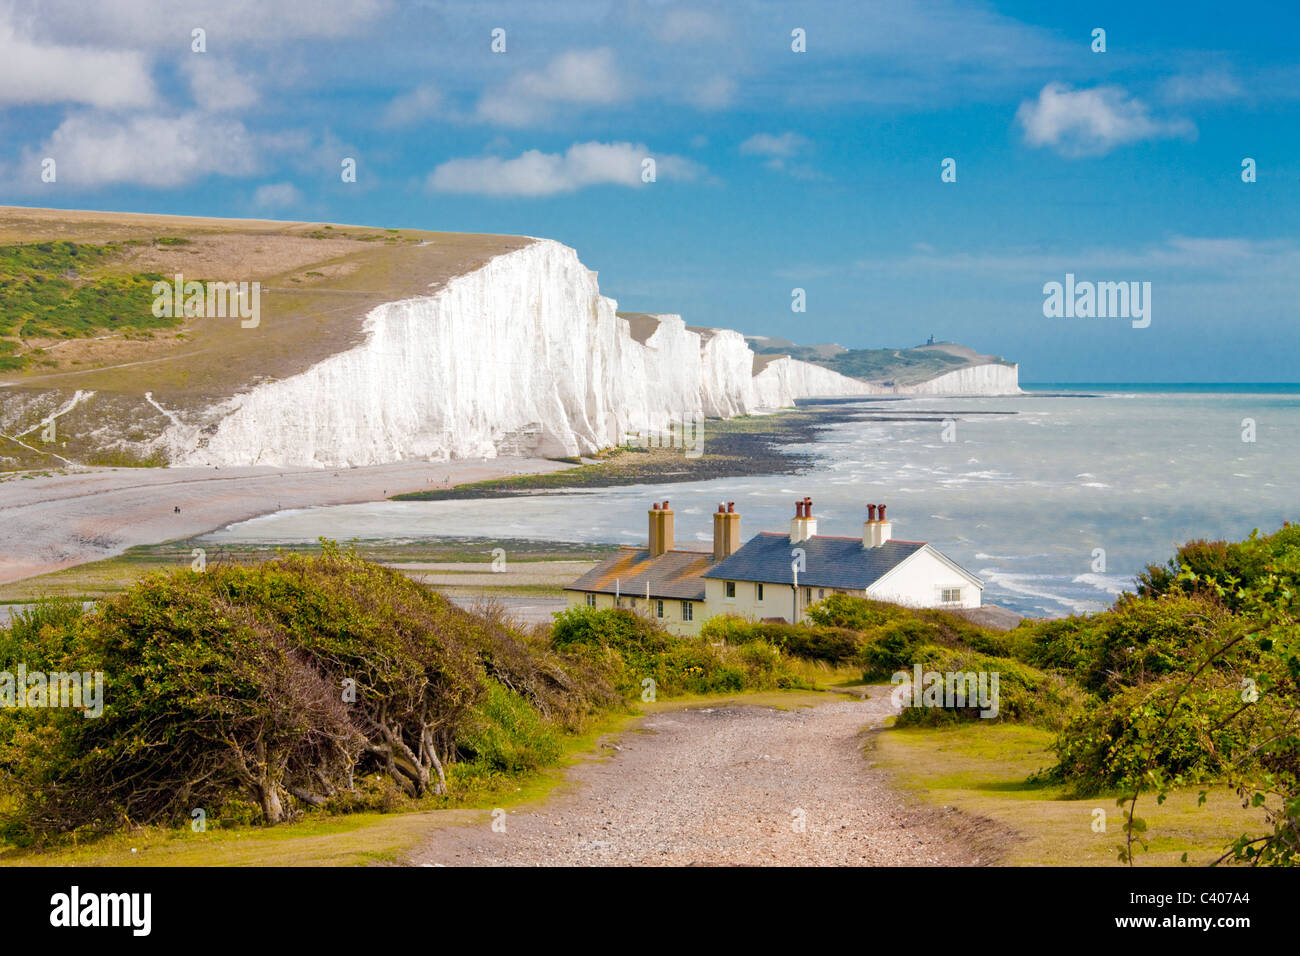 En Grande-Bretagne, en Europe, l'Angleterre, l'East Sussex, Sept Soeurs, littoral, falaises, Côte, côte, côte falaise de craie Banque D'Images